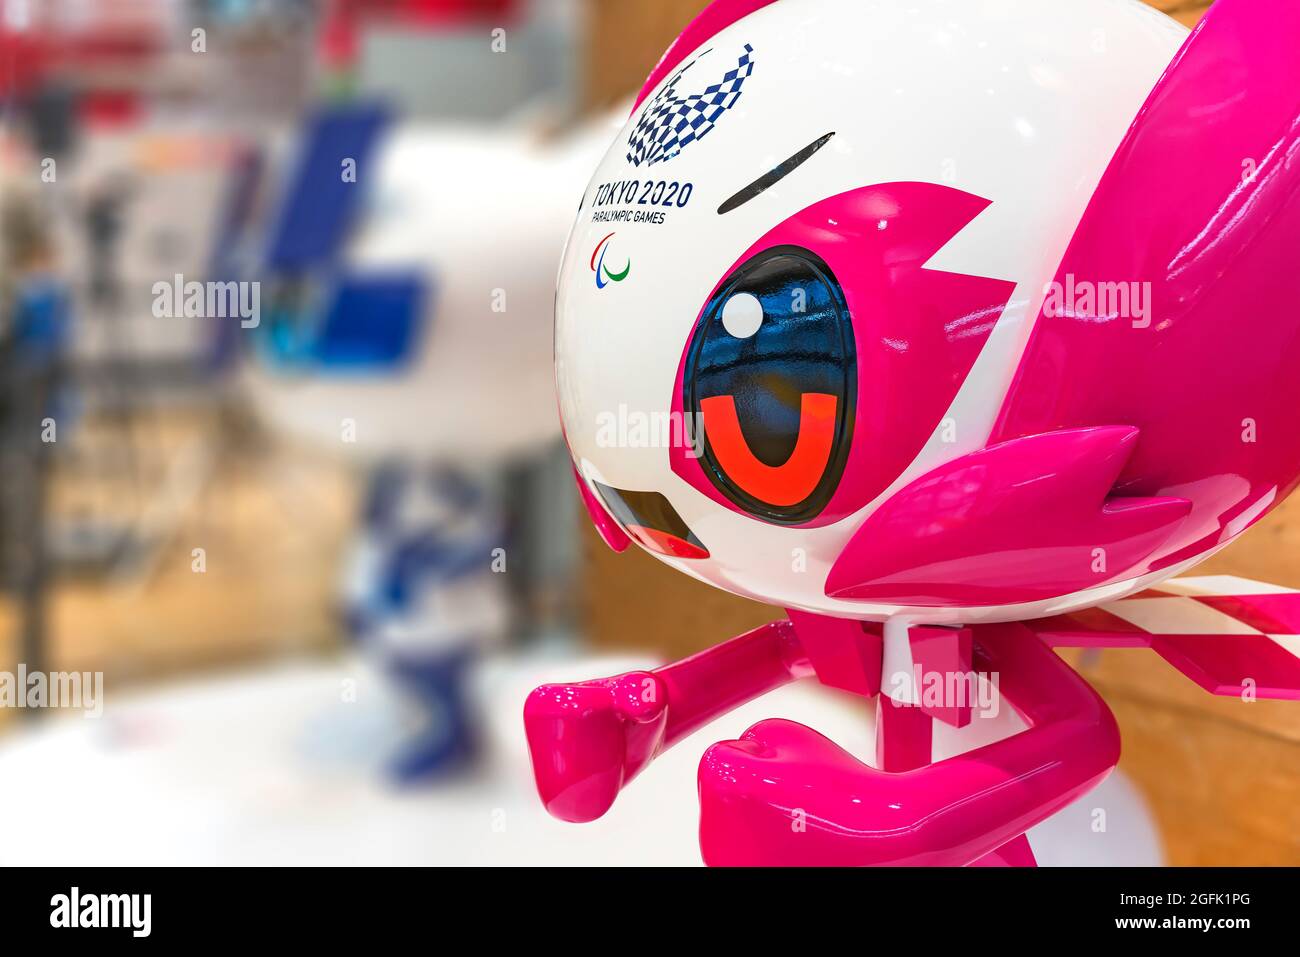 tokyo, japon - août 24 2021 : gros plan sur le visage d'une figurine de taille de vie de la mascotte quelque part le jour des Jeux paralympiques d'été de 2020 ouverture ceremo Banque D'Images